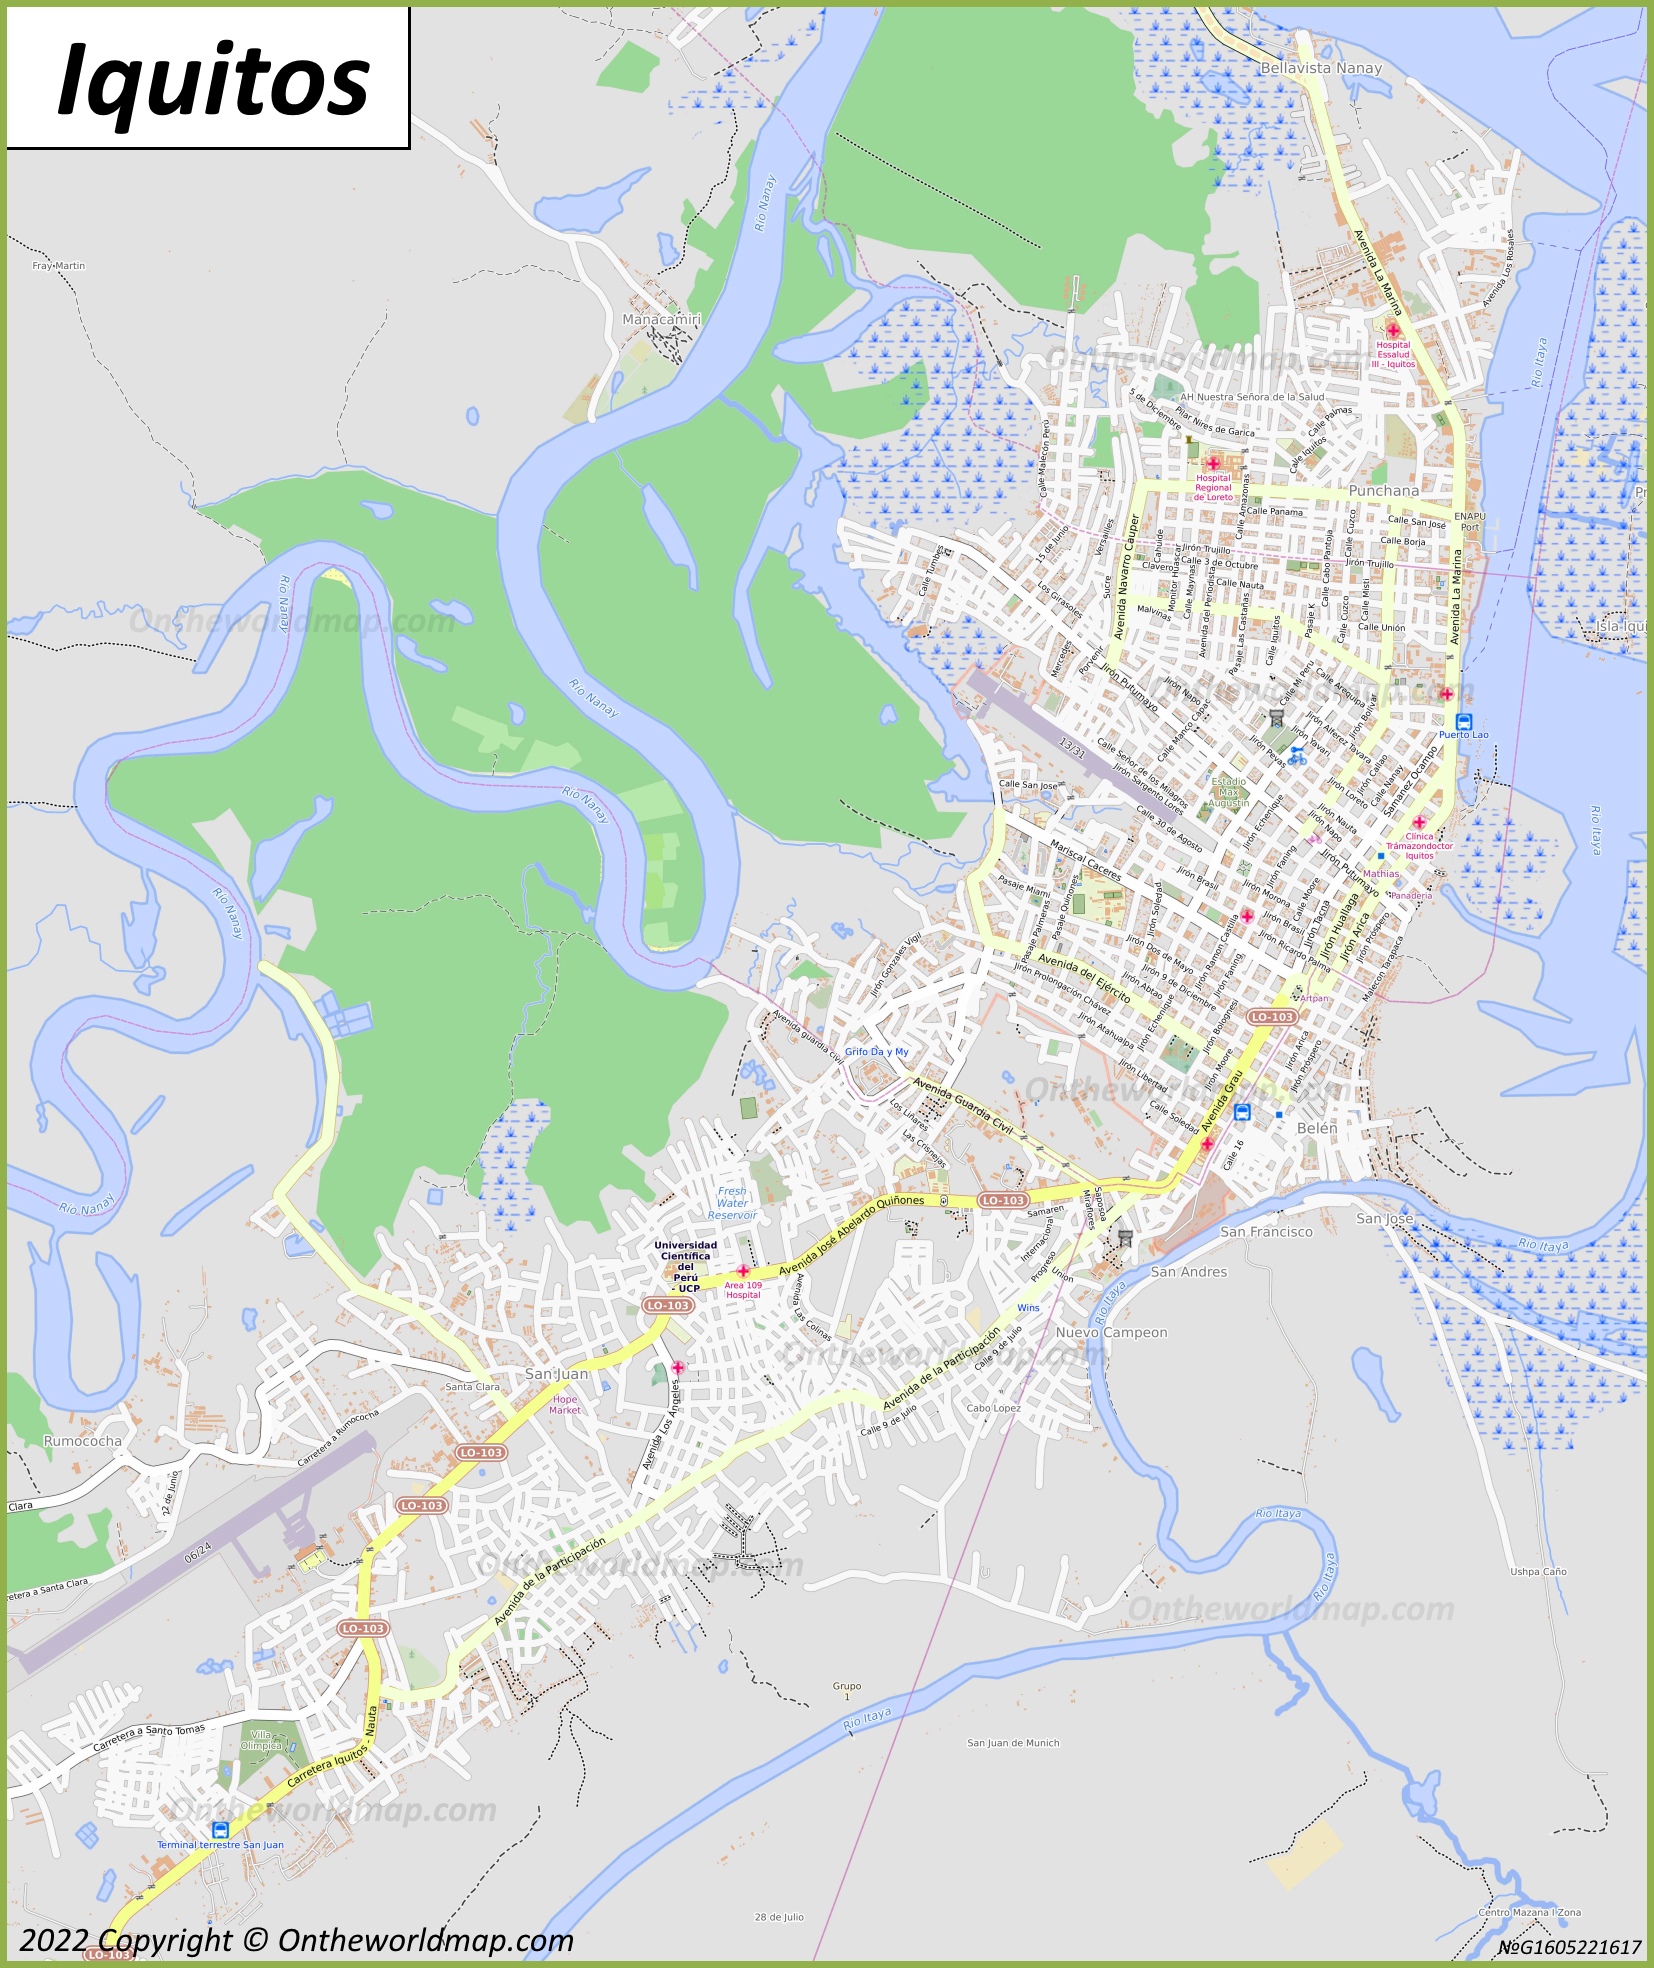 Mapa de Iquitos